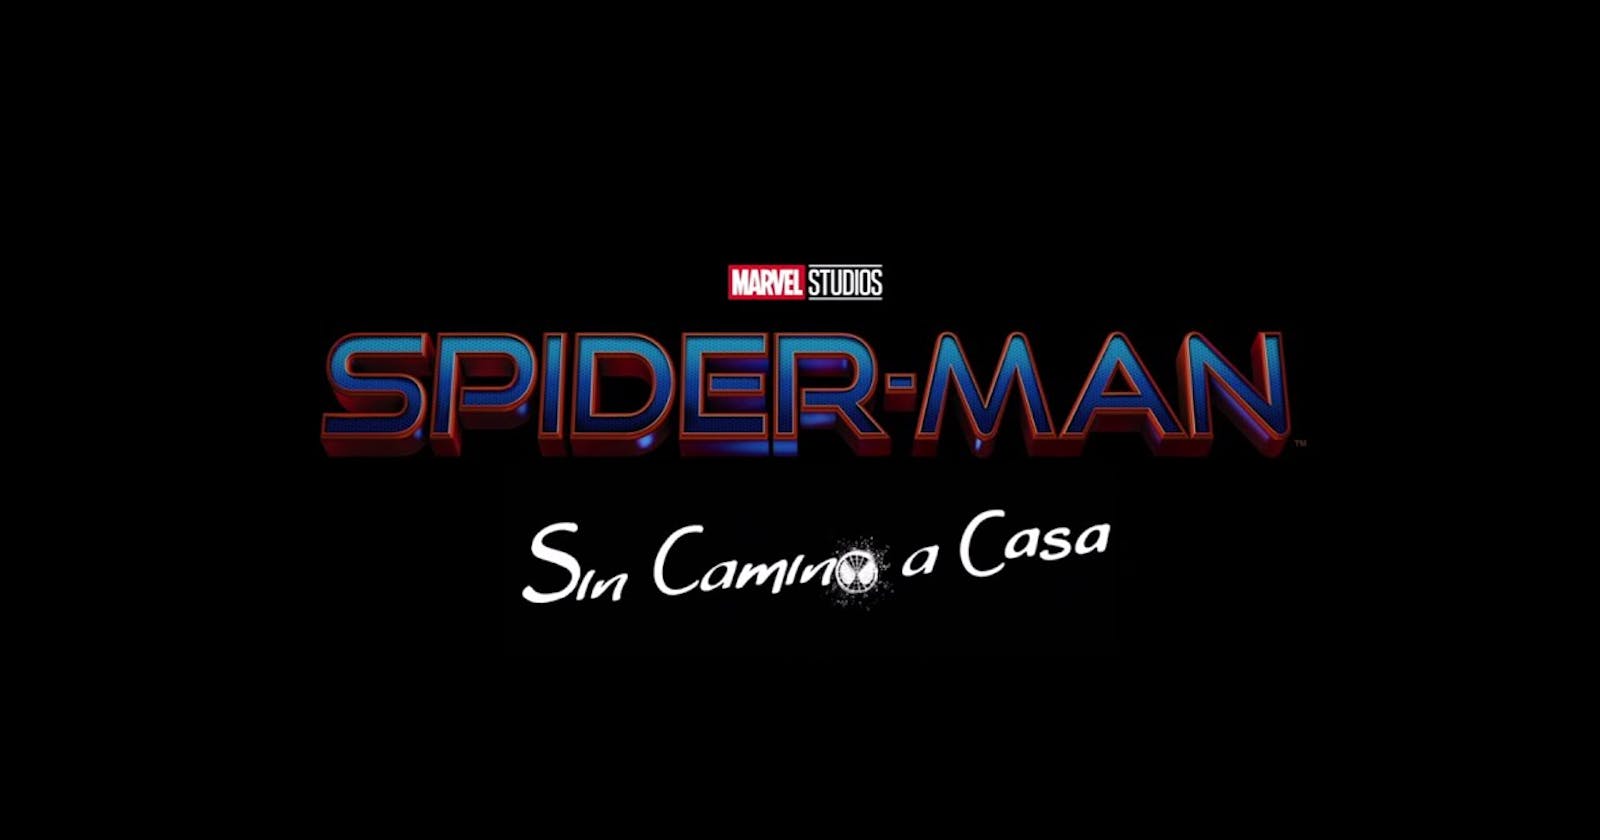 ! “TSpider-Man: Sin camino a casa (2021)“ Película Completa (ℍ𝔻) — Descargar y Latino 𝟙𝟘𝟠𝟘𝕡